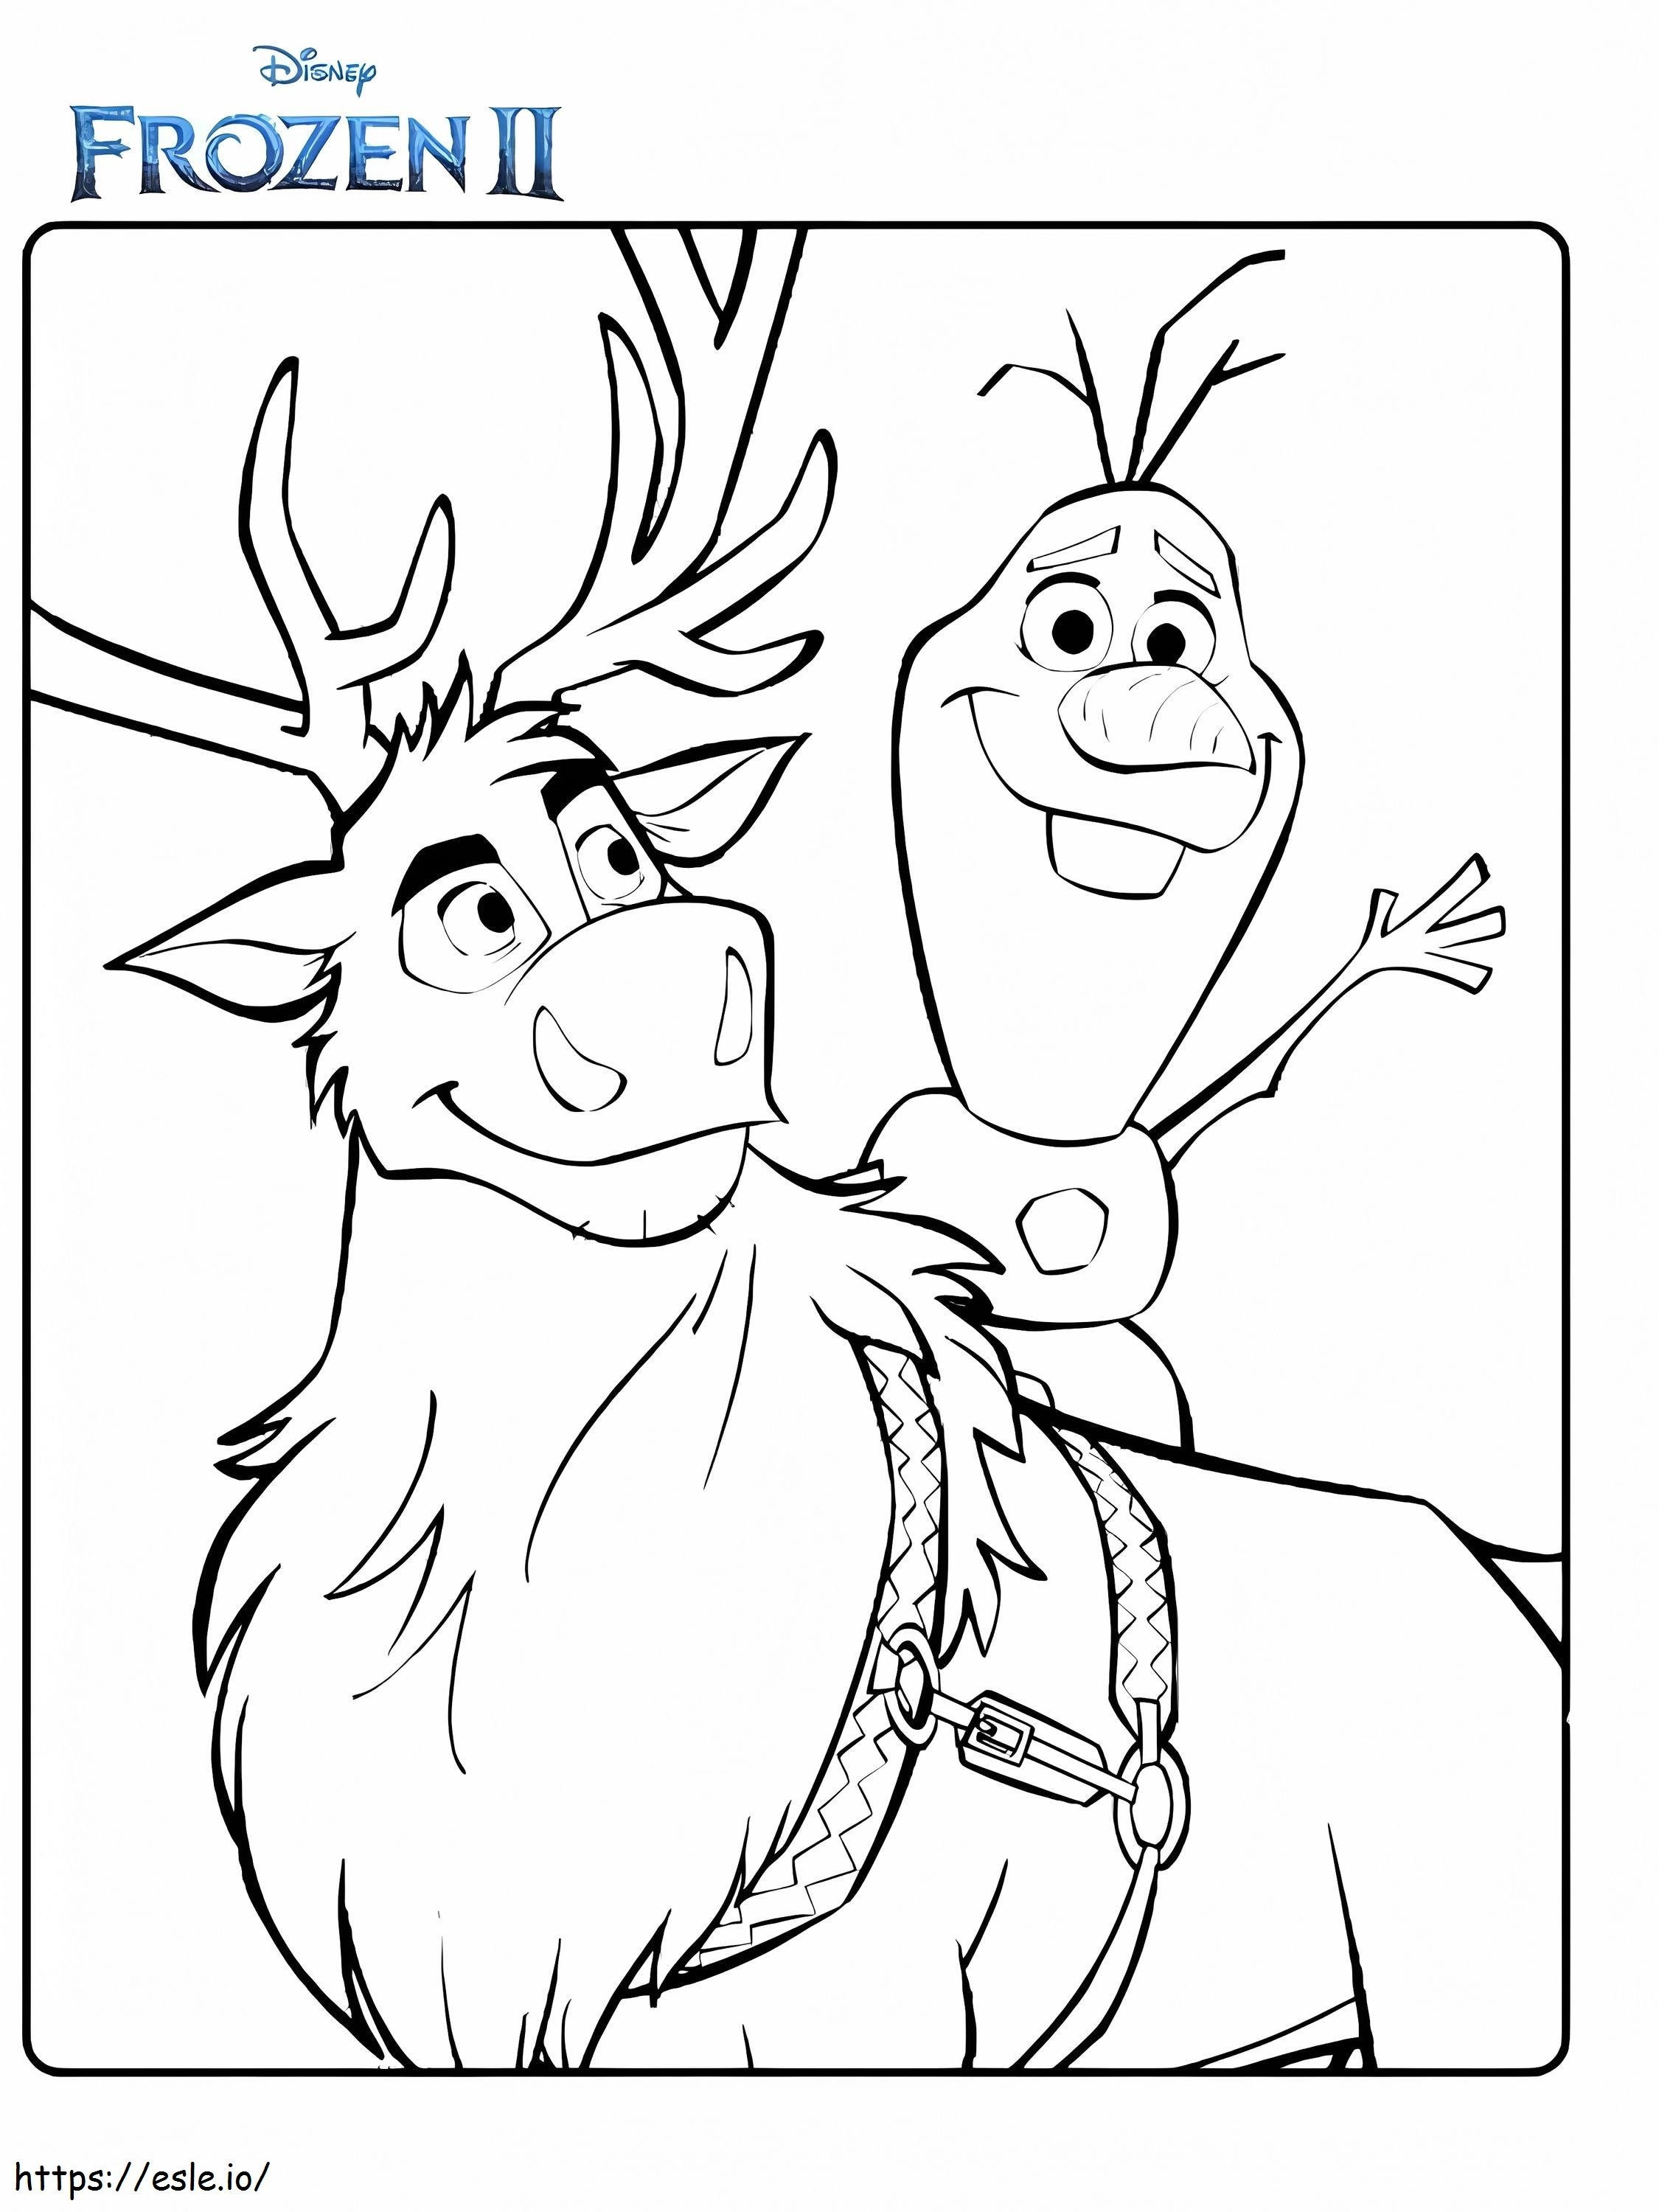 Olaf és Sven Frozen 2 színező oldal kifestő